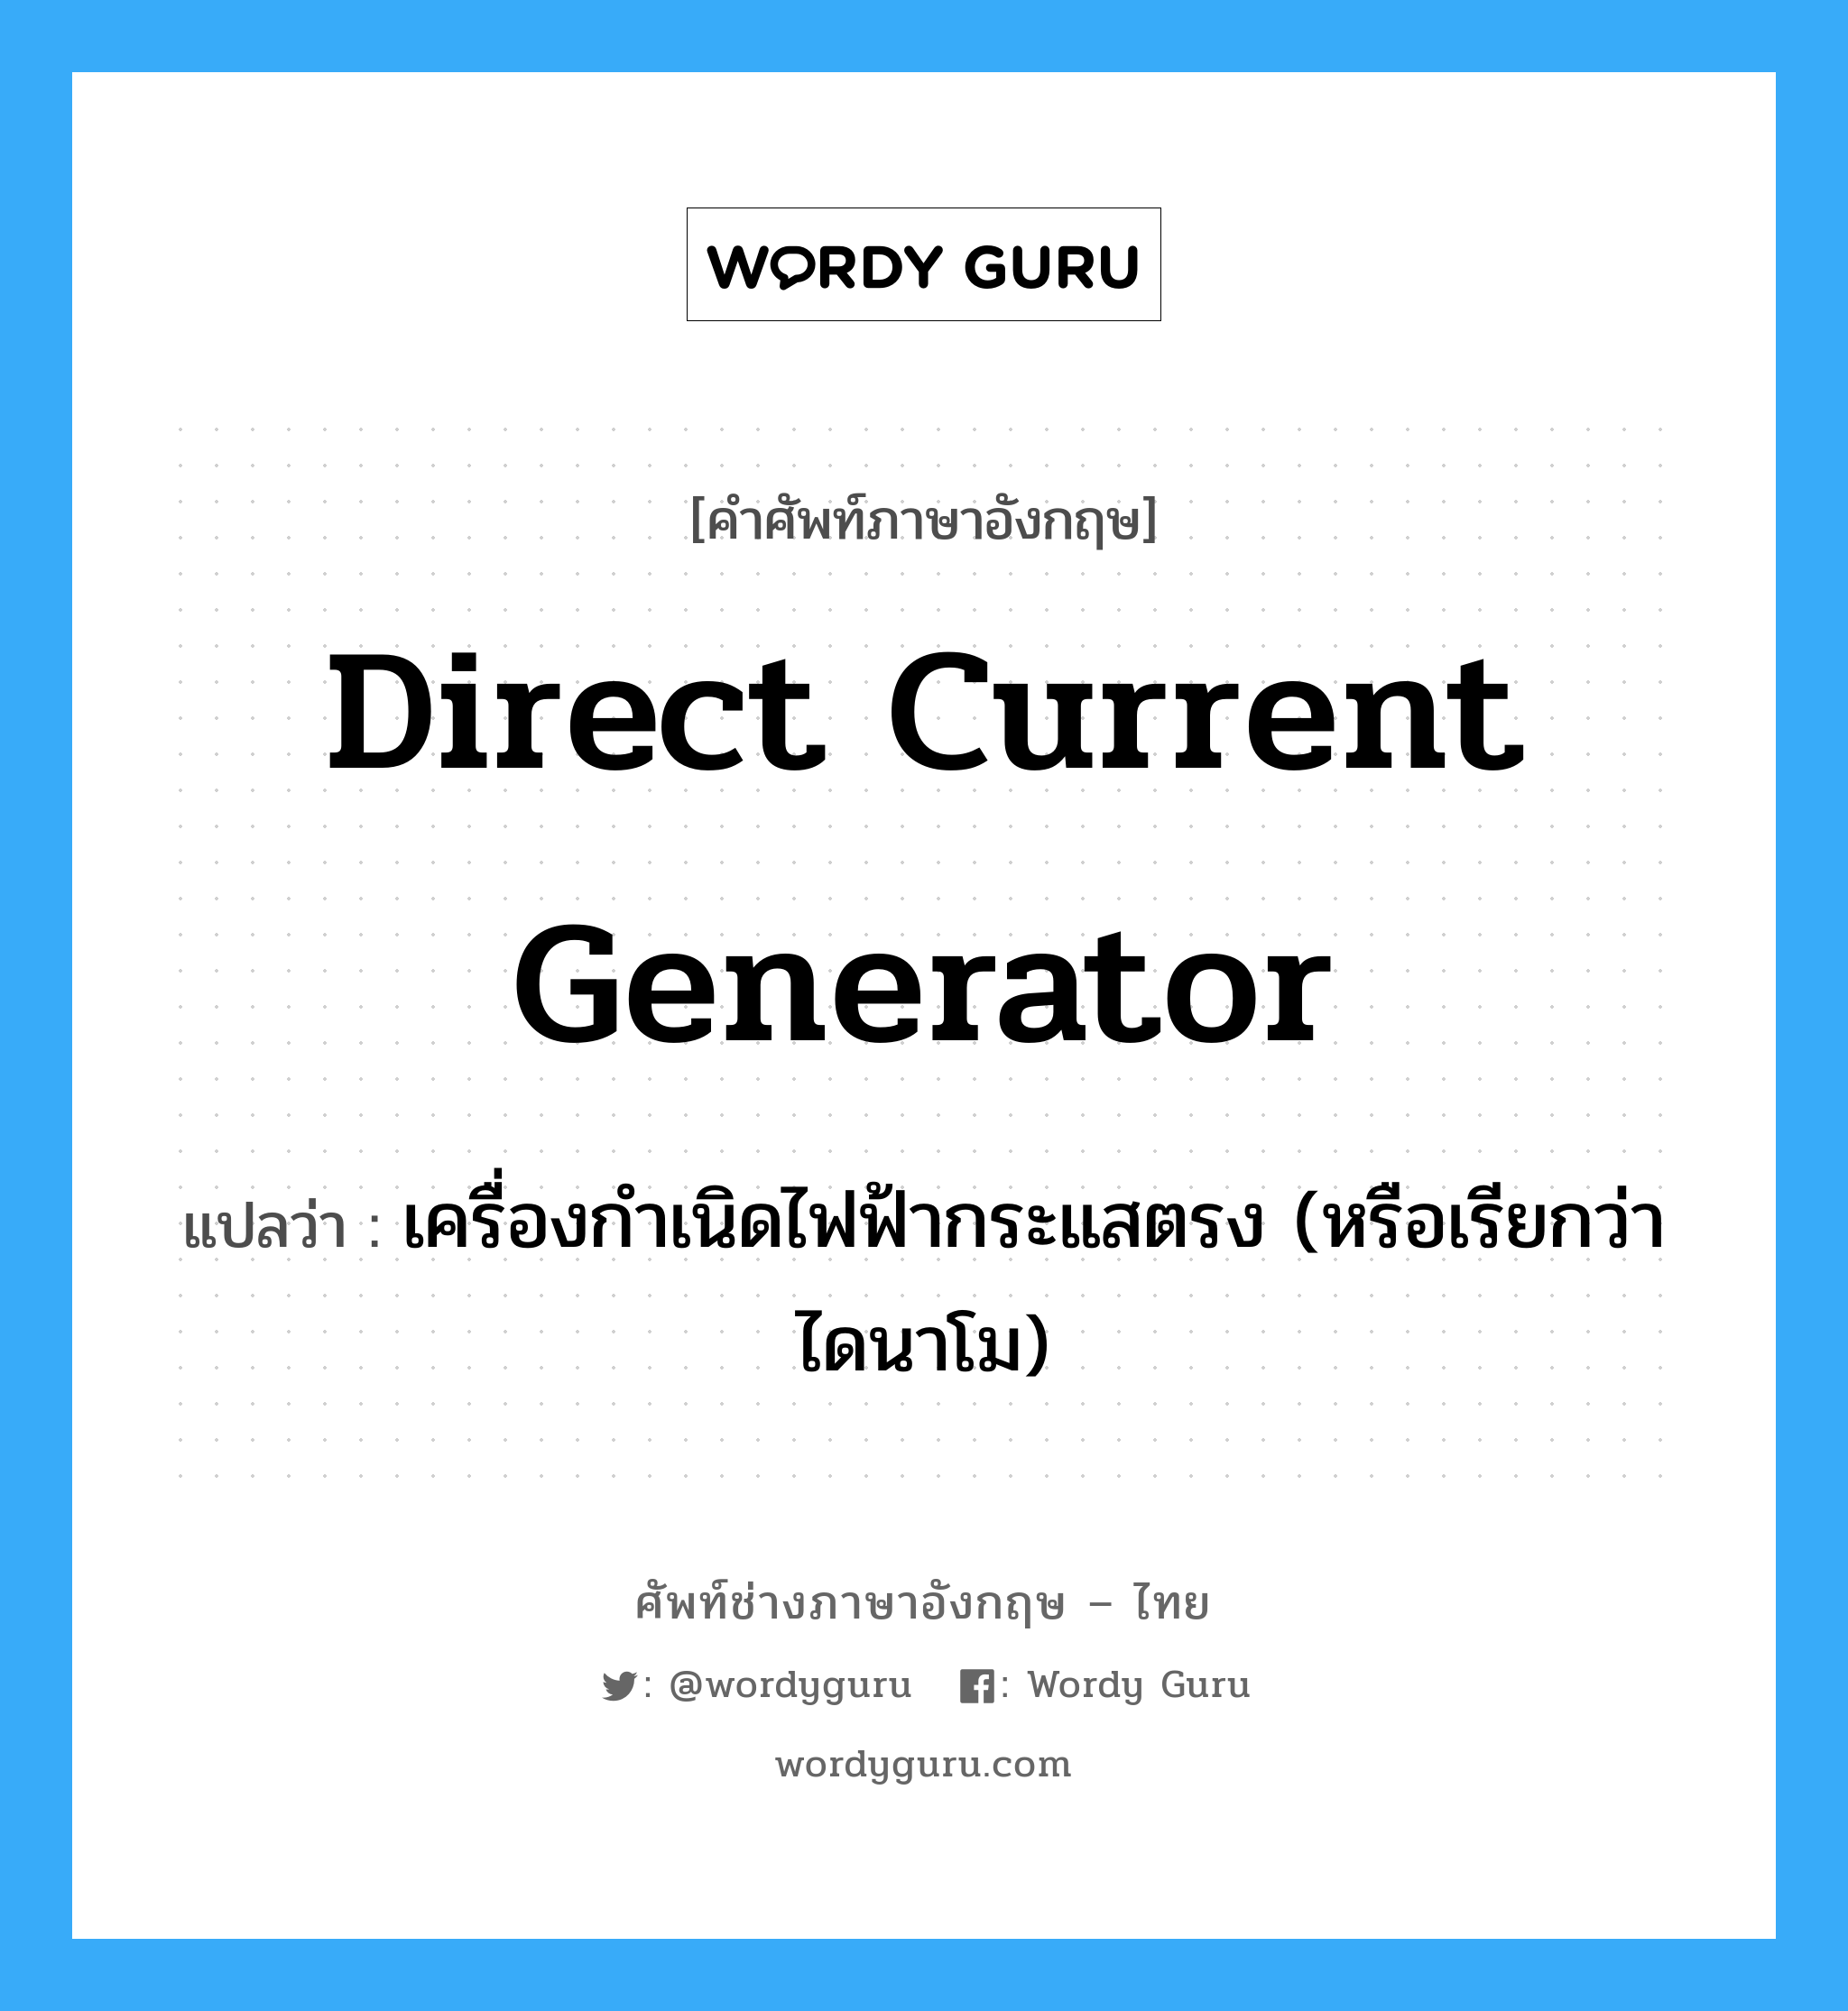 direct current generator แปลว่า?, คำศัพท์ช่างภาษาอังกฤษ - ไทย direct current generator คำศัพท์ภาษาอังกฤษ direct current generator แปลว่า เครื่องกำเนิดไฟฟ้ากระแสตรง (หรือเรียกว่า ไดนาโม)